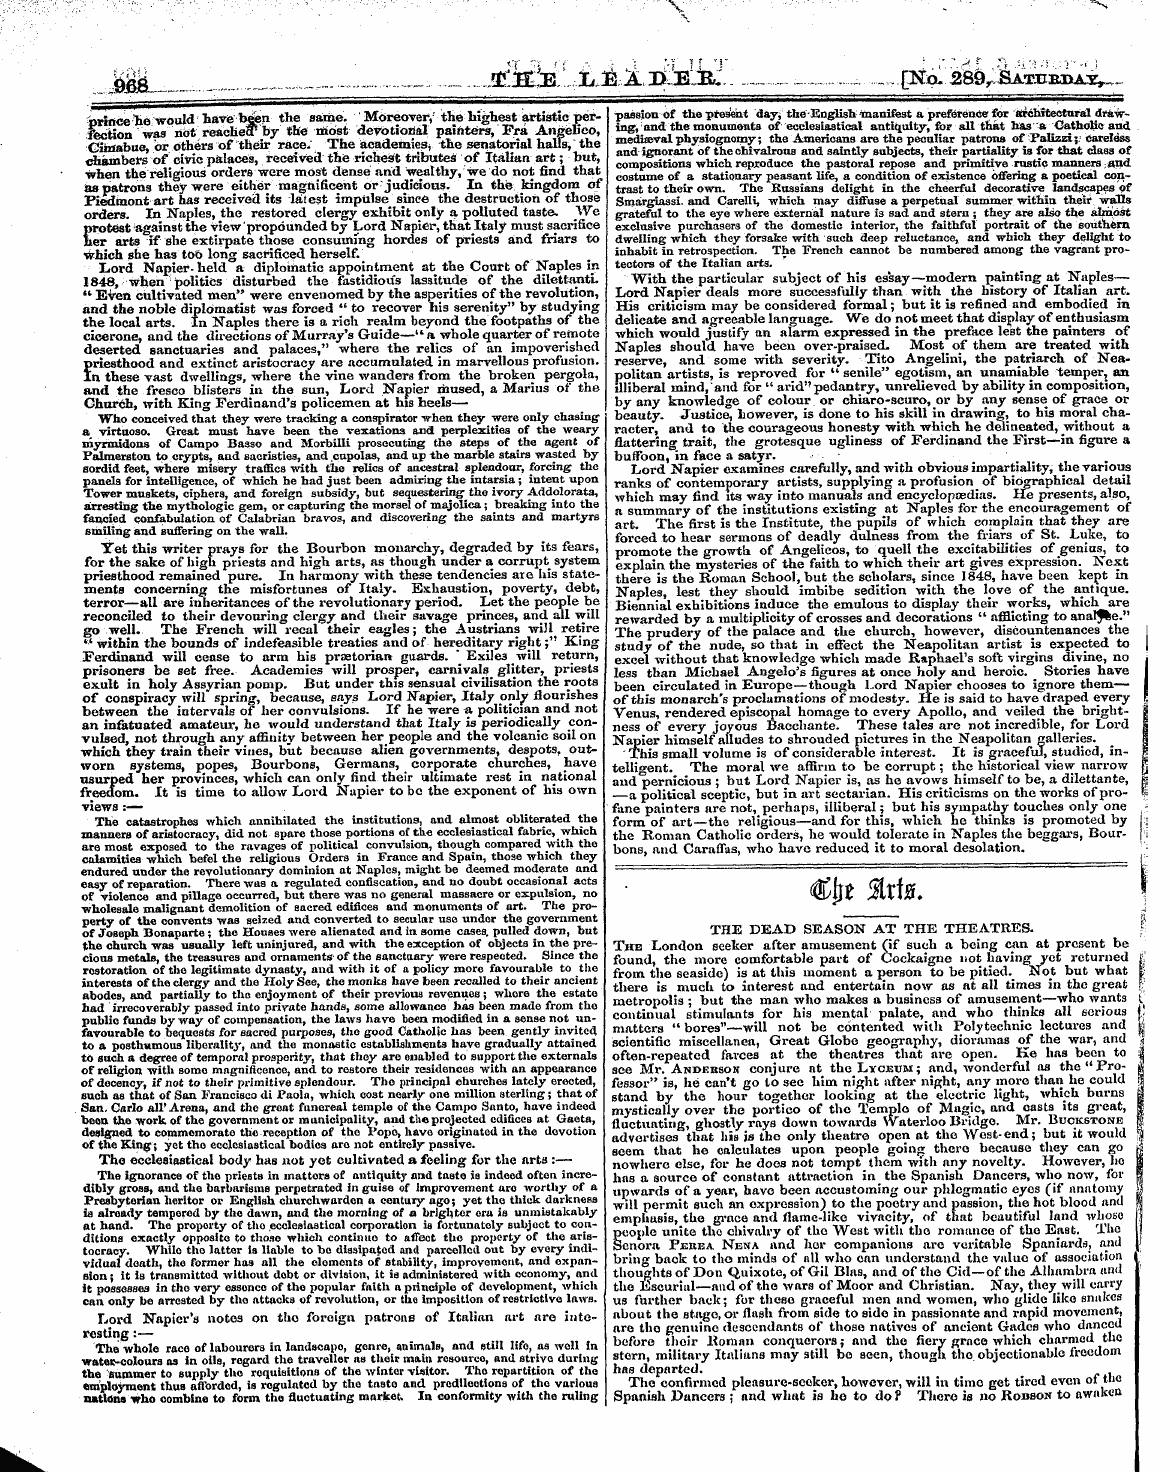 Leader (1850-1860): jS F Y, 1st edition - /^"Mttv (Jf **4n: (Ql' Ijv /-Vvvjjsl?